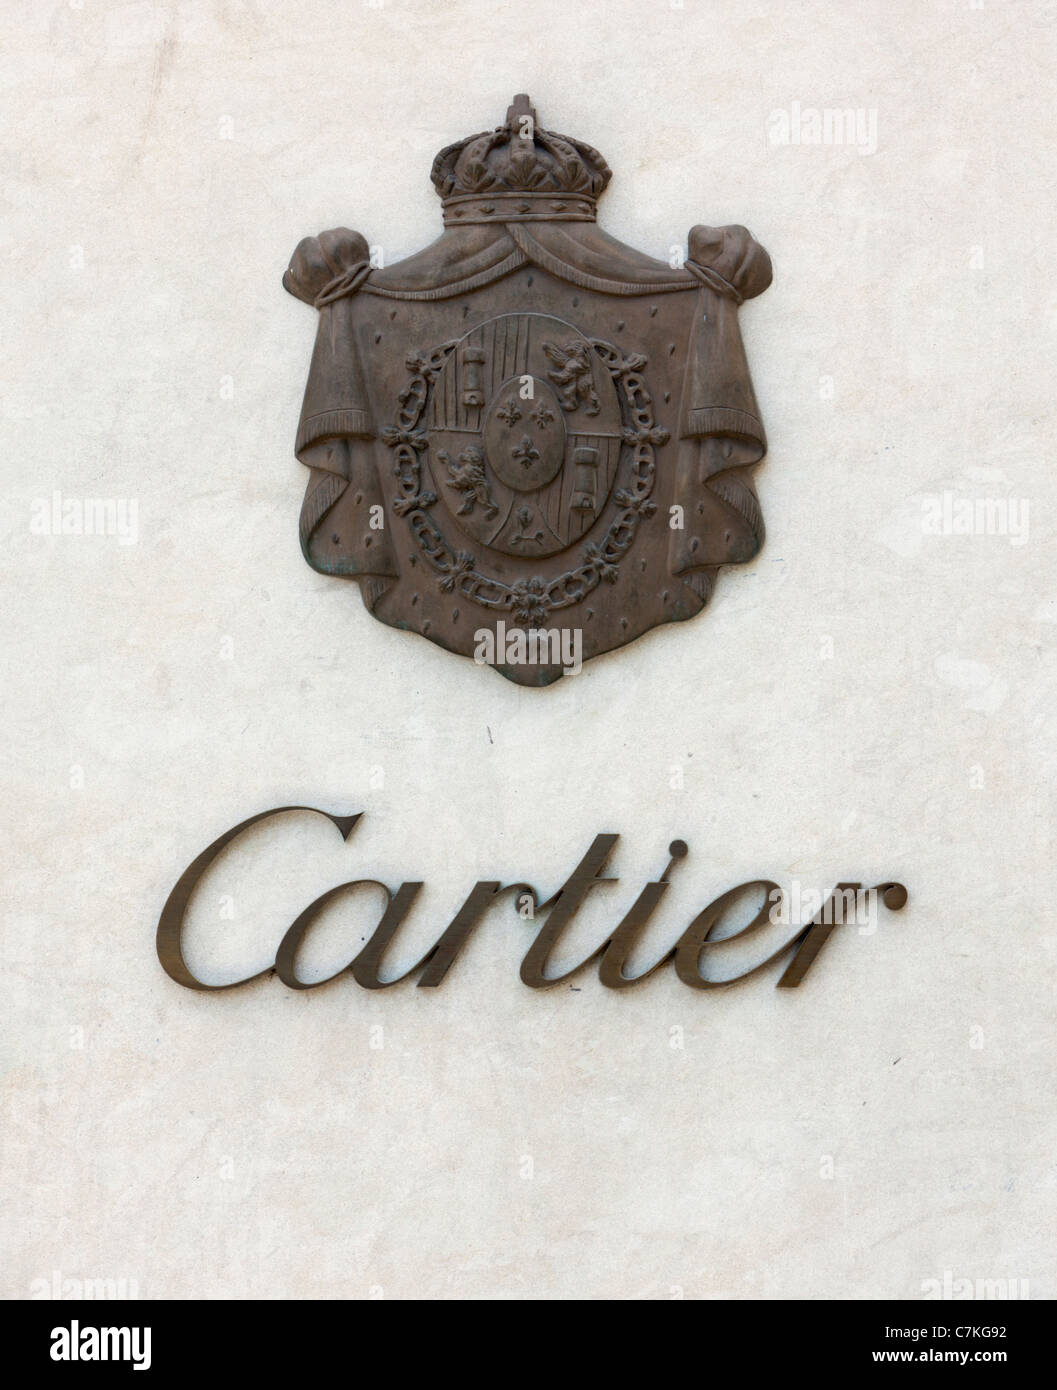 cartier old logo